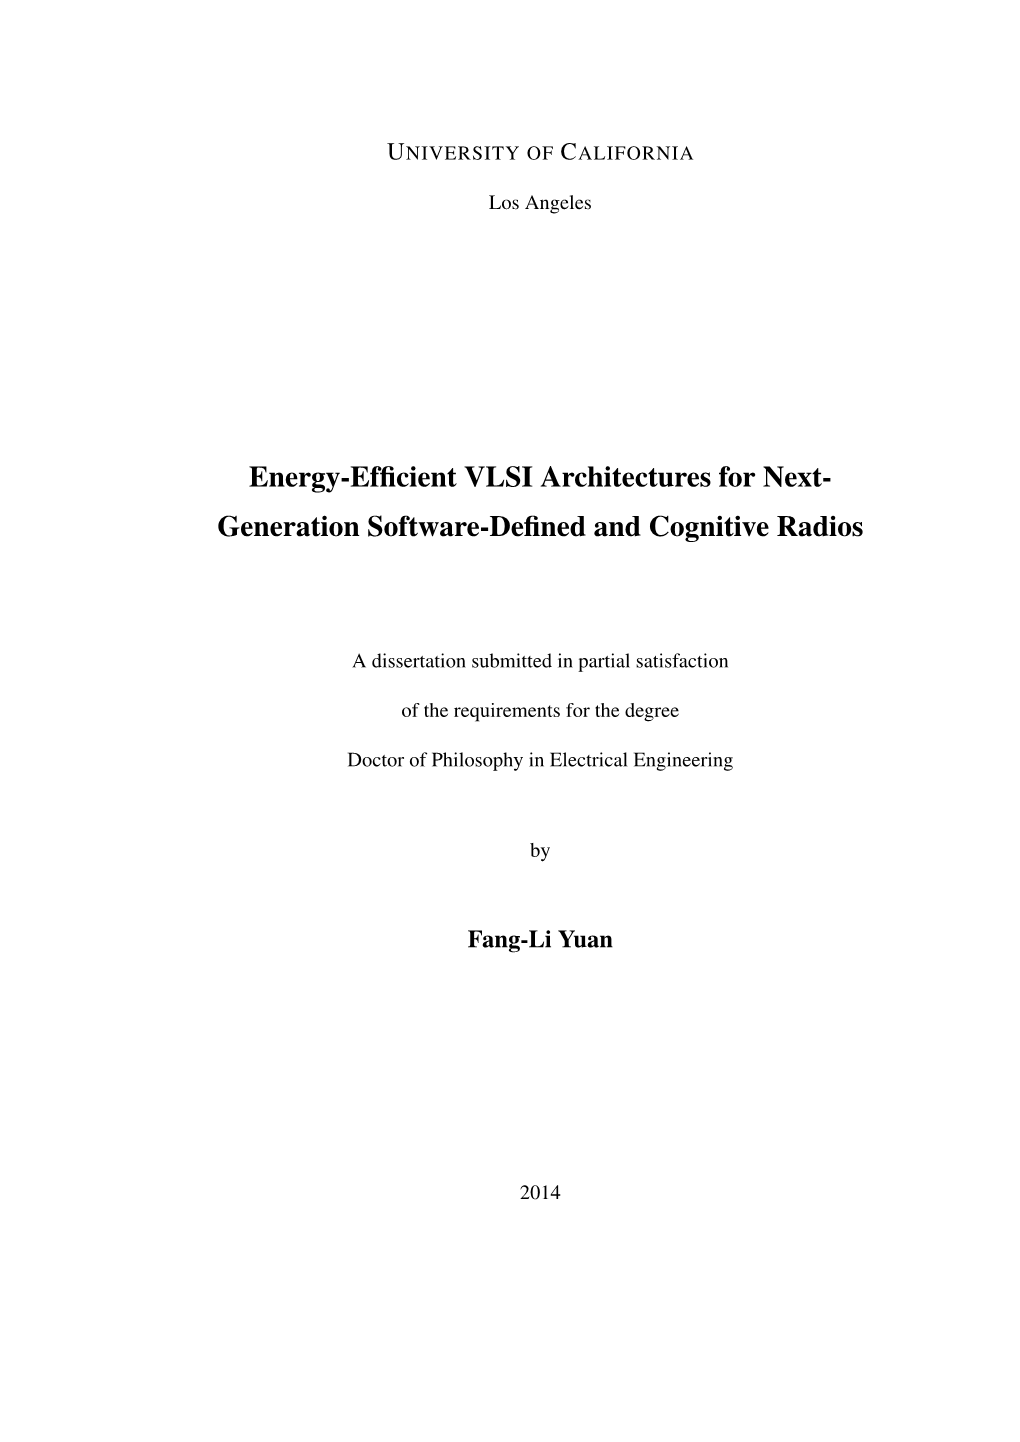 Energy-Efficient VLSI Architectures for Next